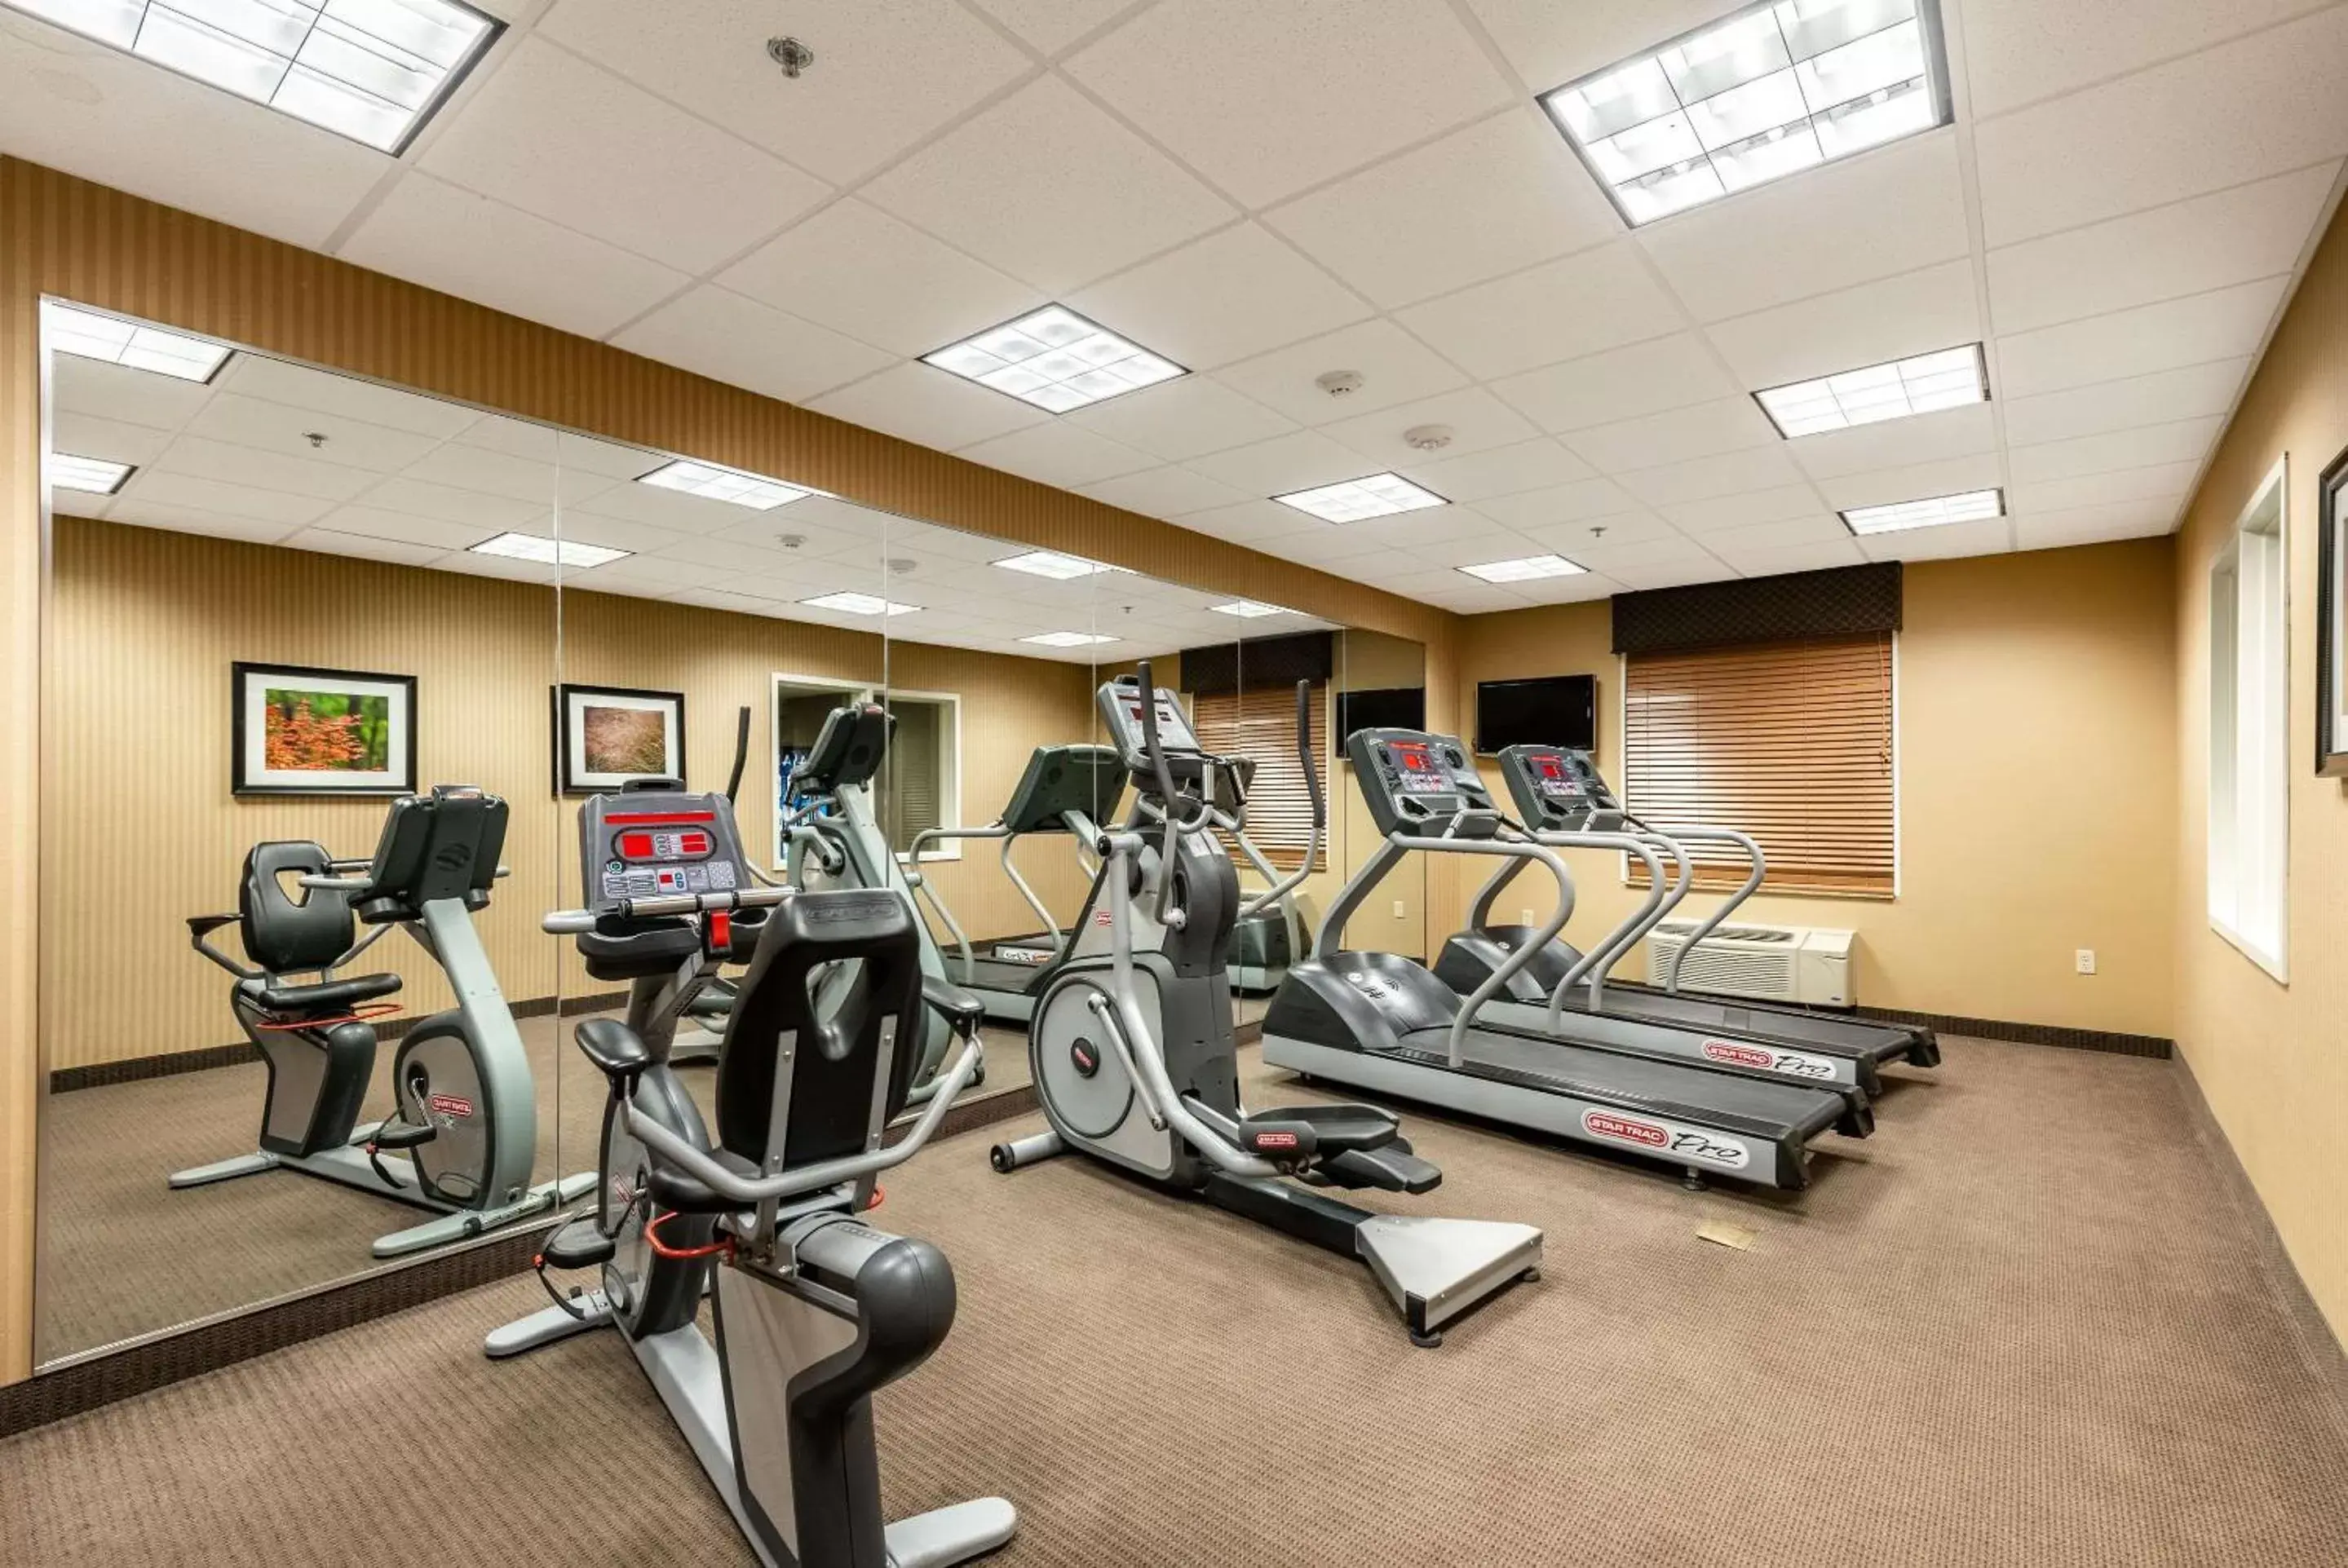 Fitness centre/facilities, Fitness Center/Facilities in Sleep Inn & Suites Ruston Near University